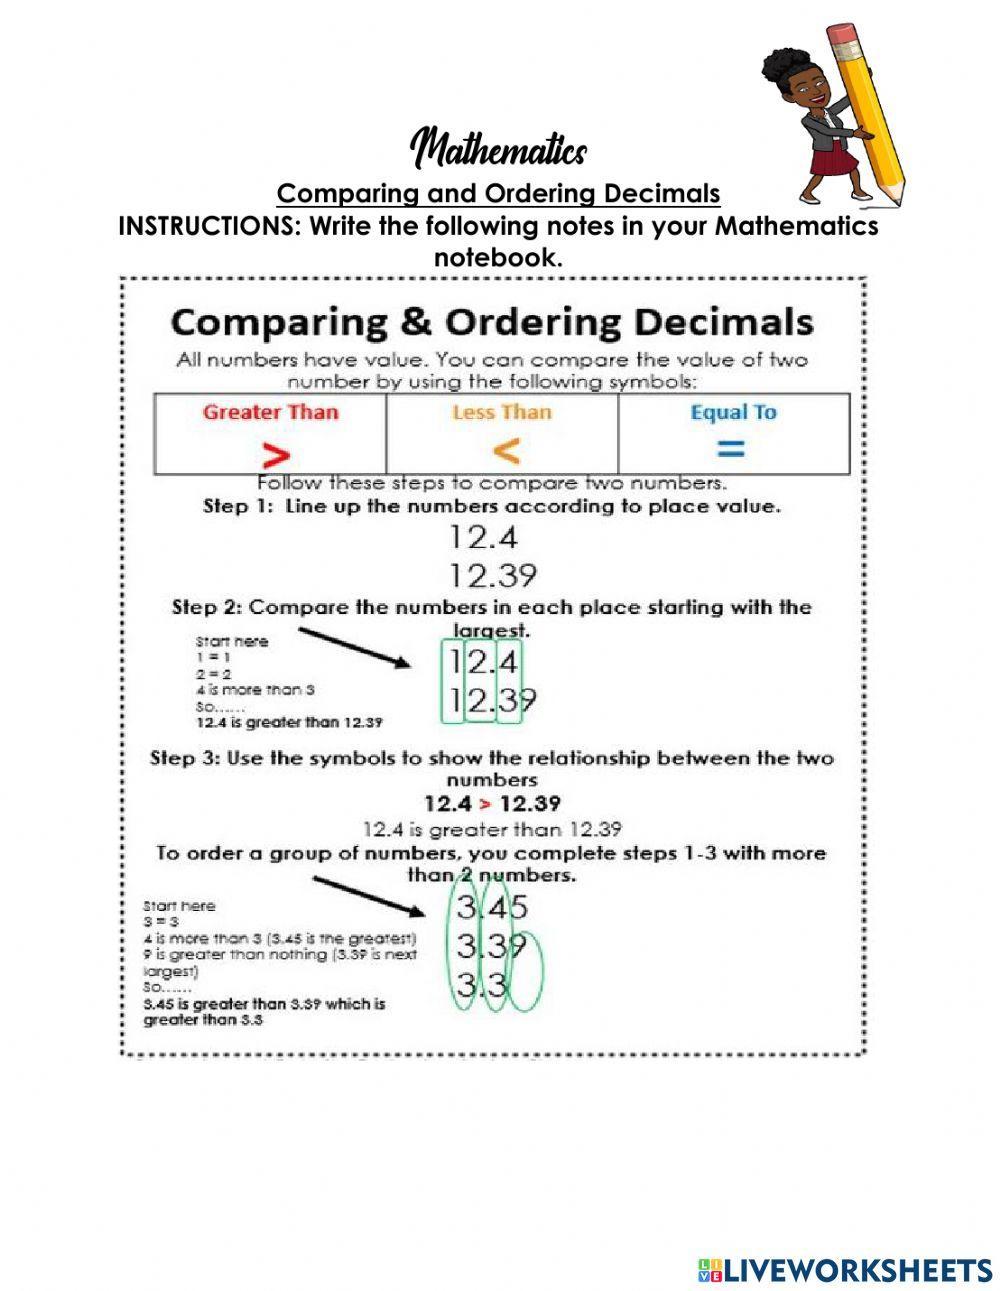 Comparing & Ordering Decimals